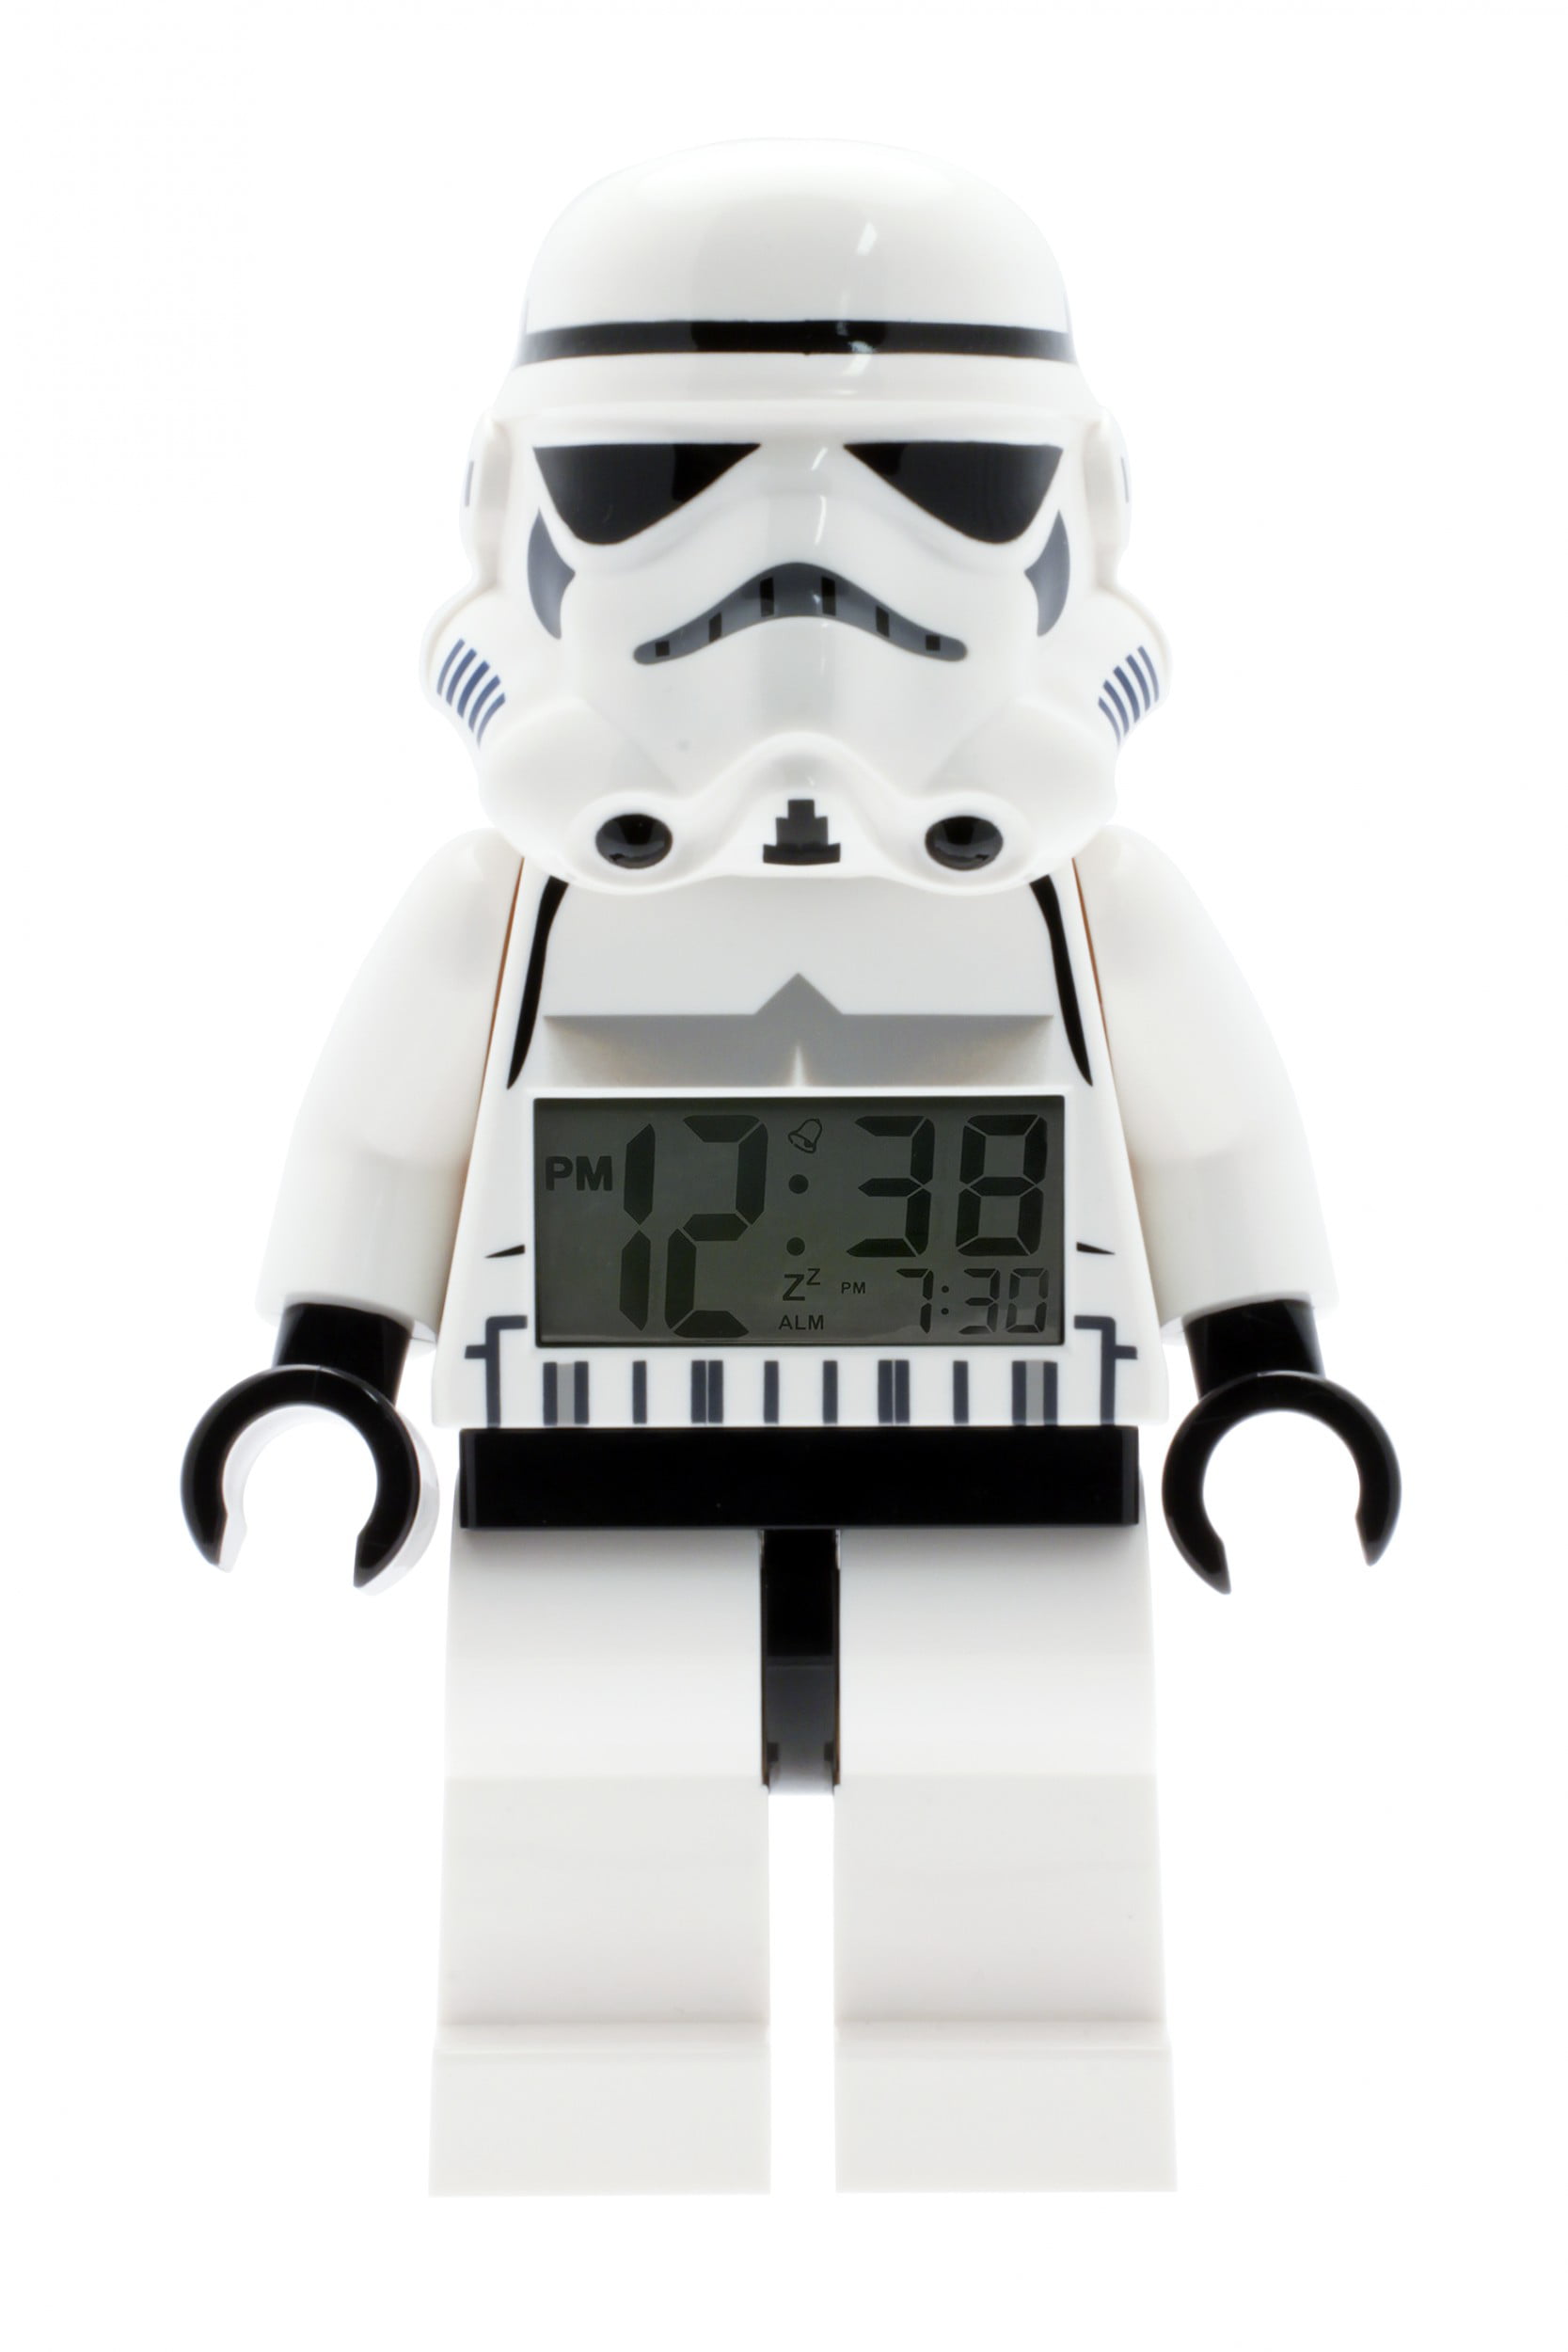 LEGO Star Wars Stormtrooper Digital Clock 9002137 for sale online